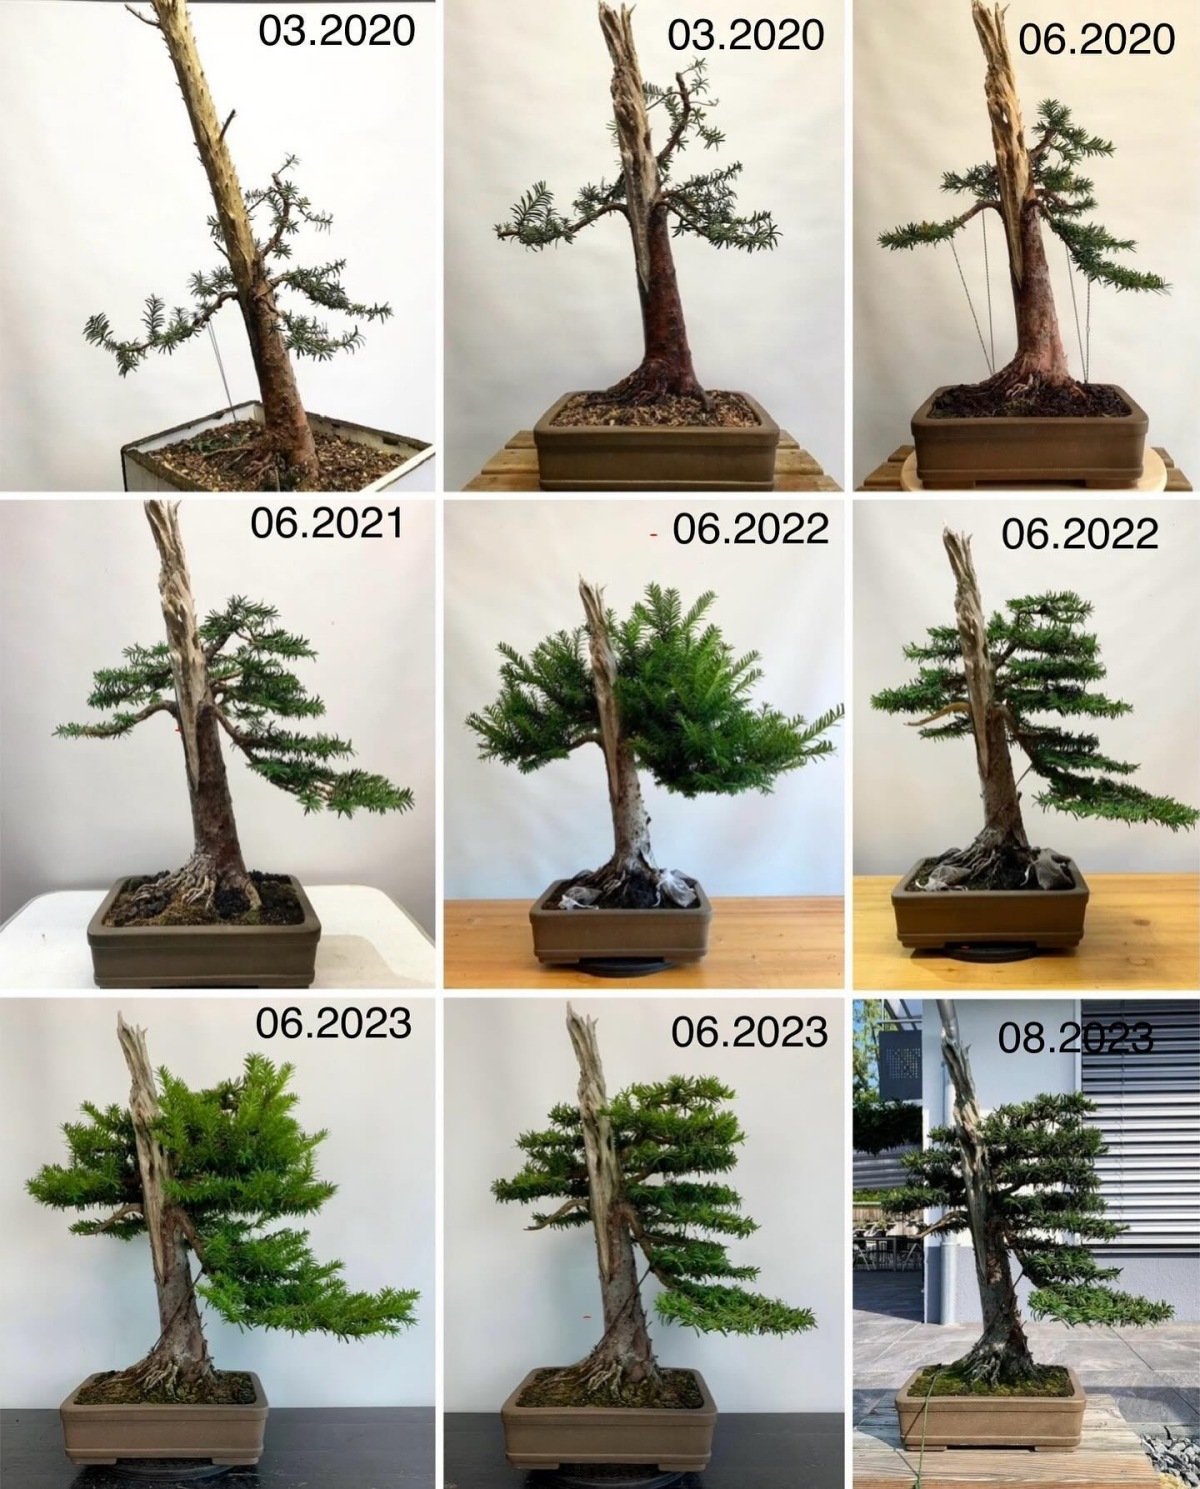 come cresce un bonsai in un anno